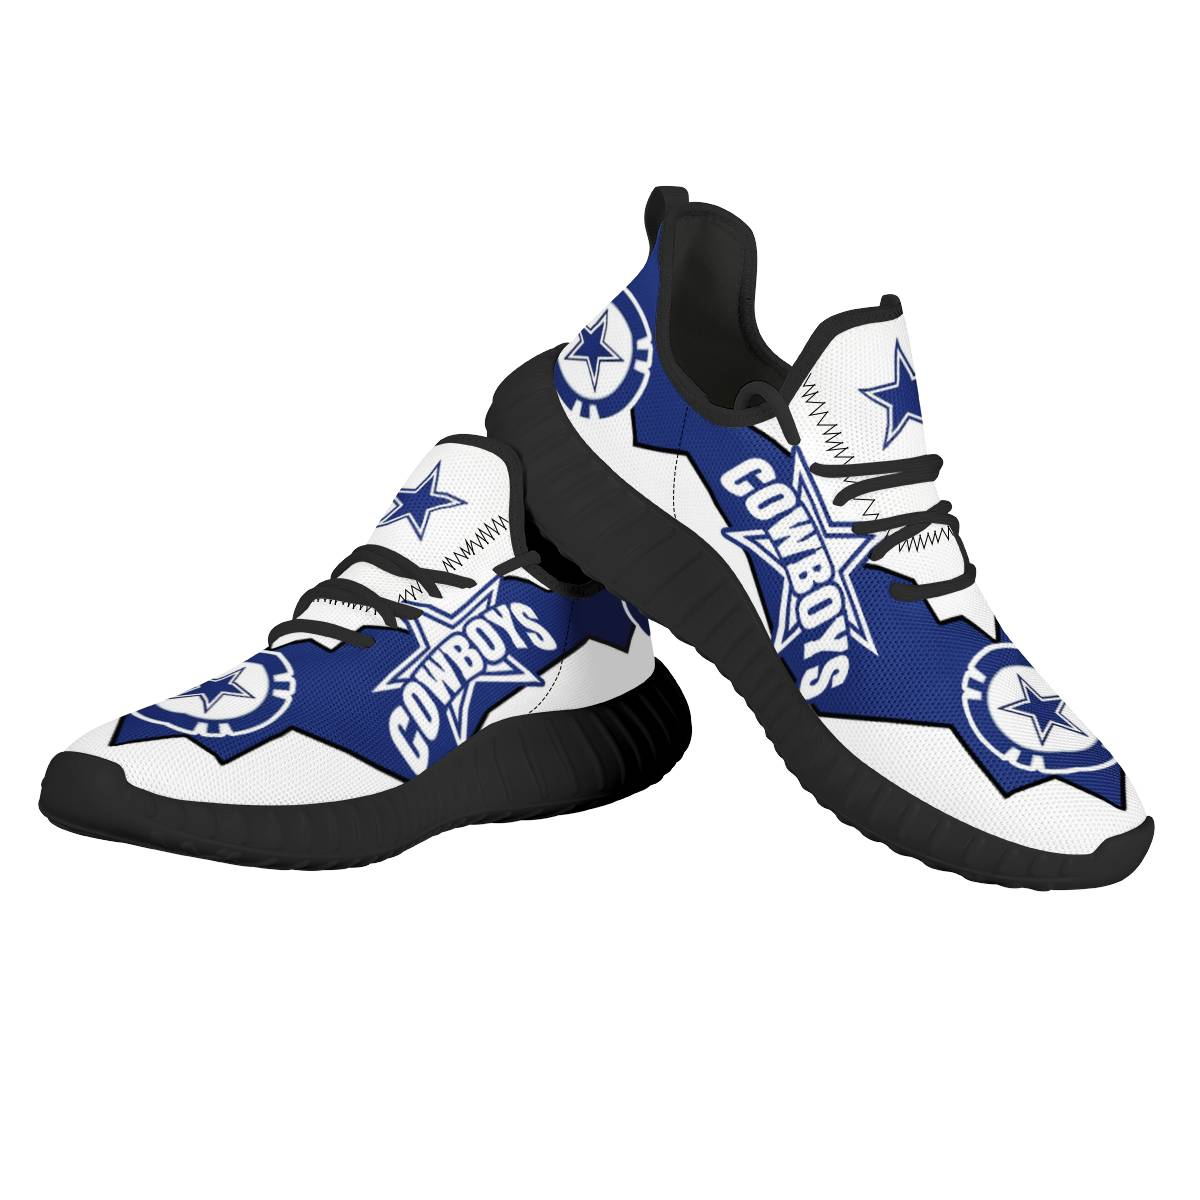 Men's NFL Dallas Cowboys Mesh Knit Sneakers/Shoes 023